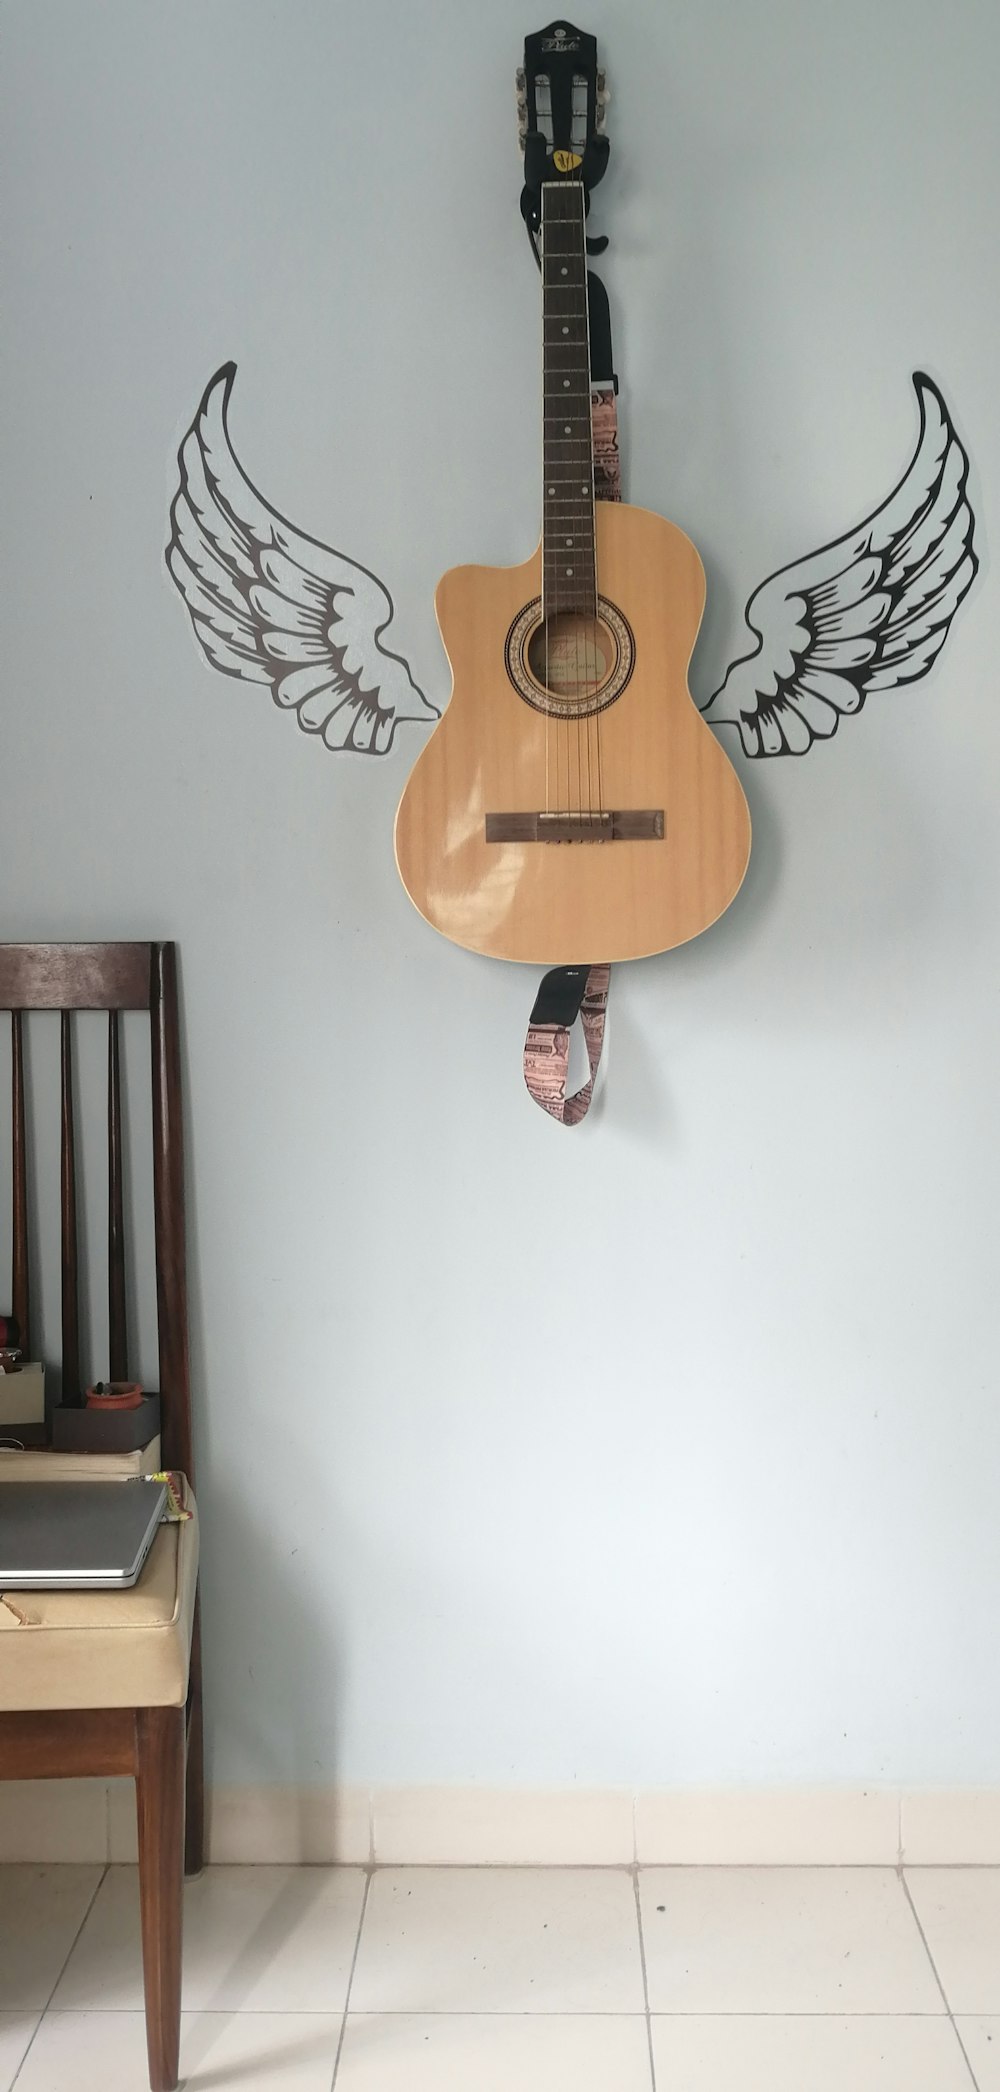 천사의 날개가 달린 벽에 매달린 어쿠스틱 기타